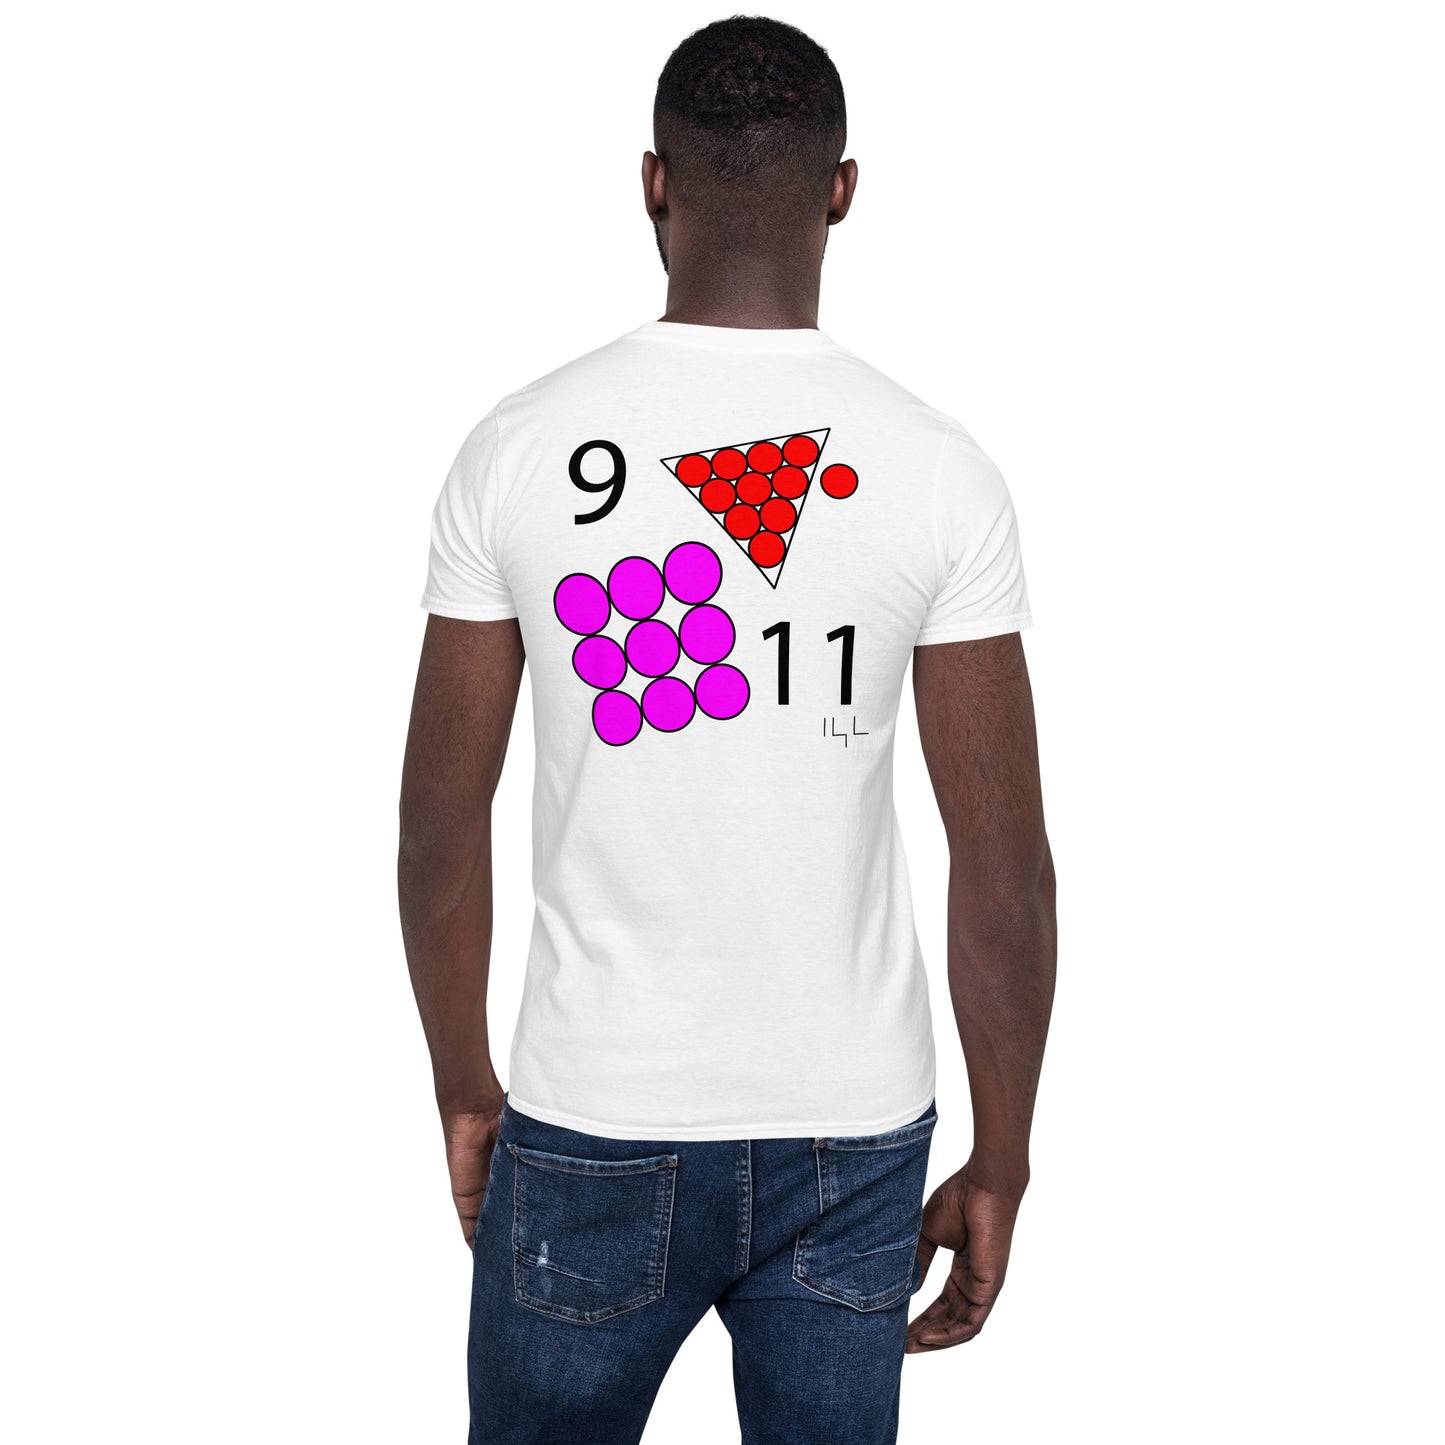 September 11th Pink T-Shirt at 9:11 0911